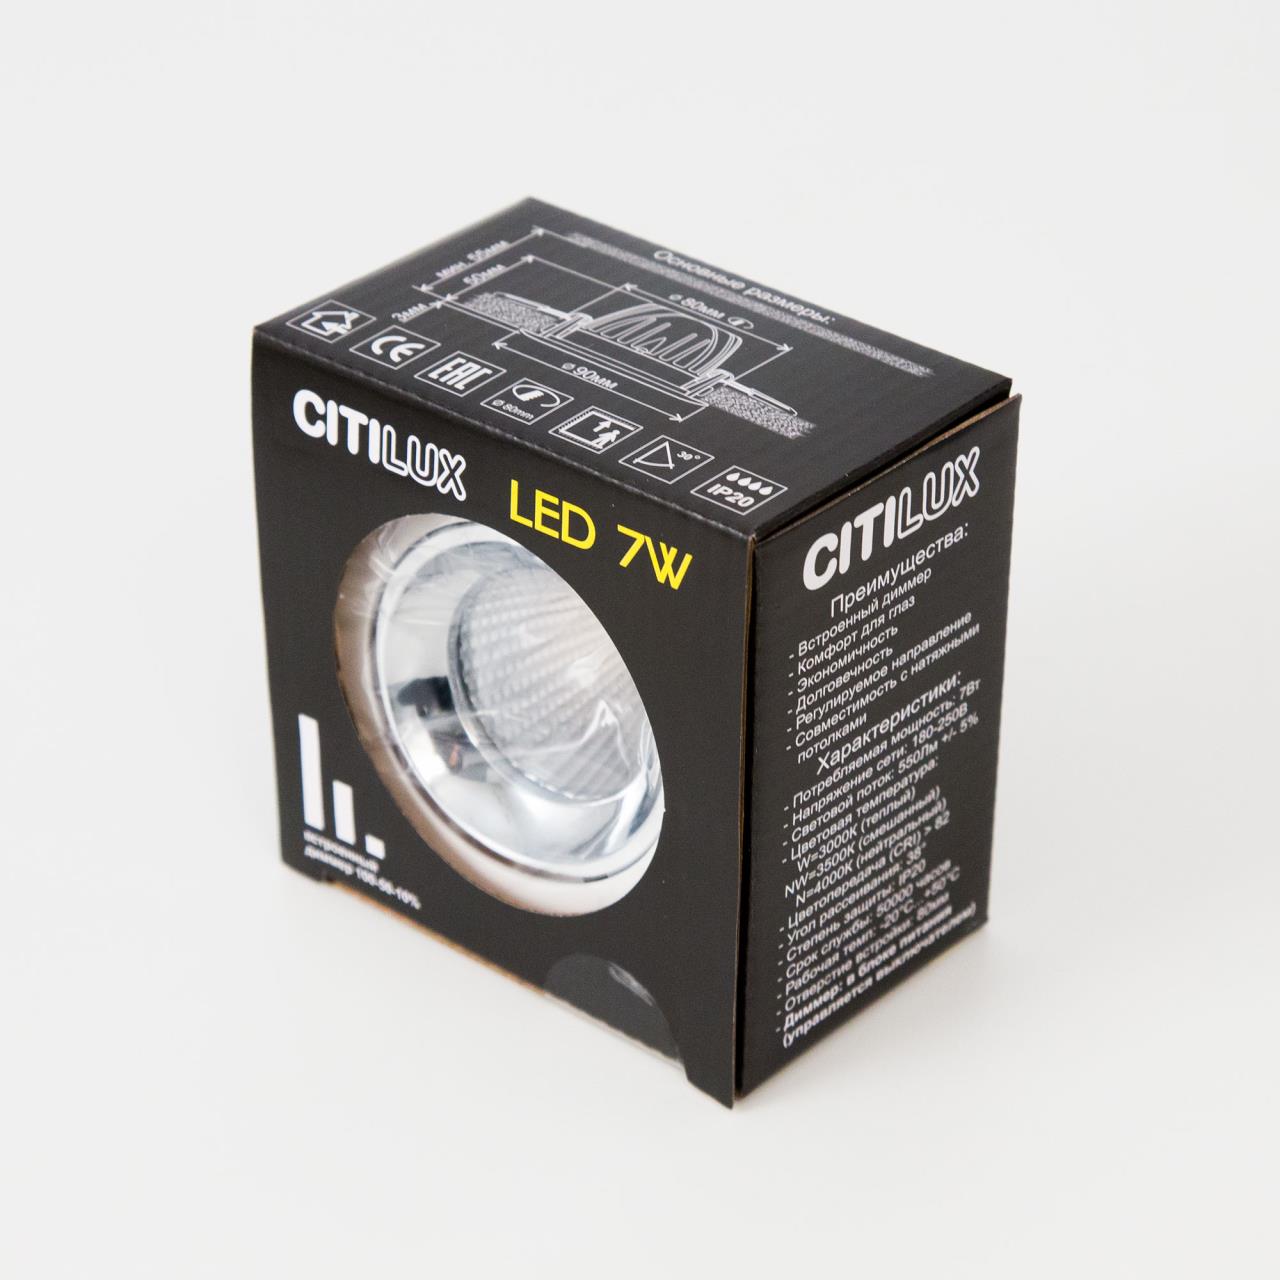 Встраиваемый светильник Citilux CLD001NW0